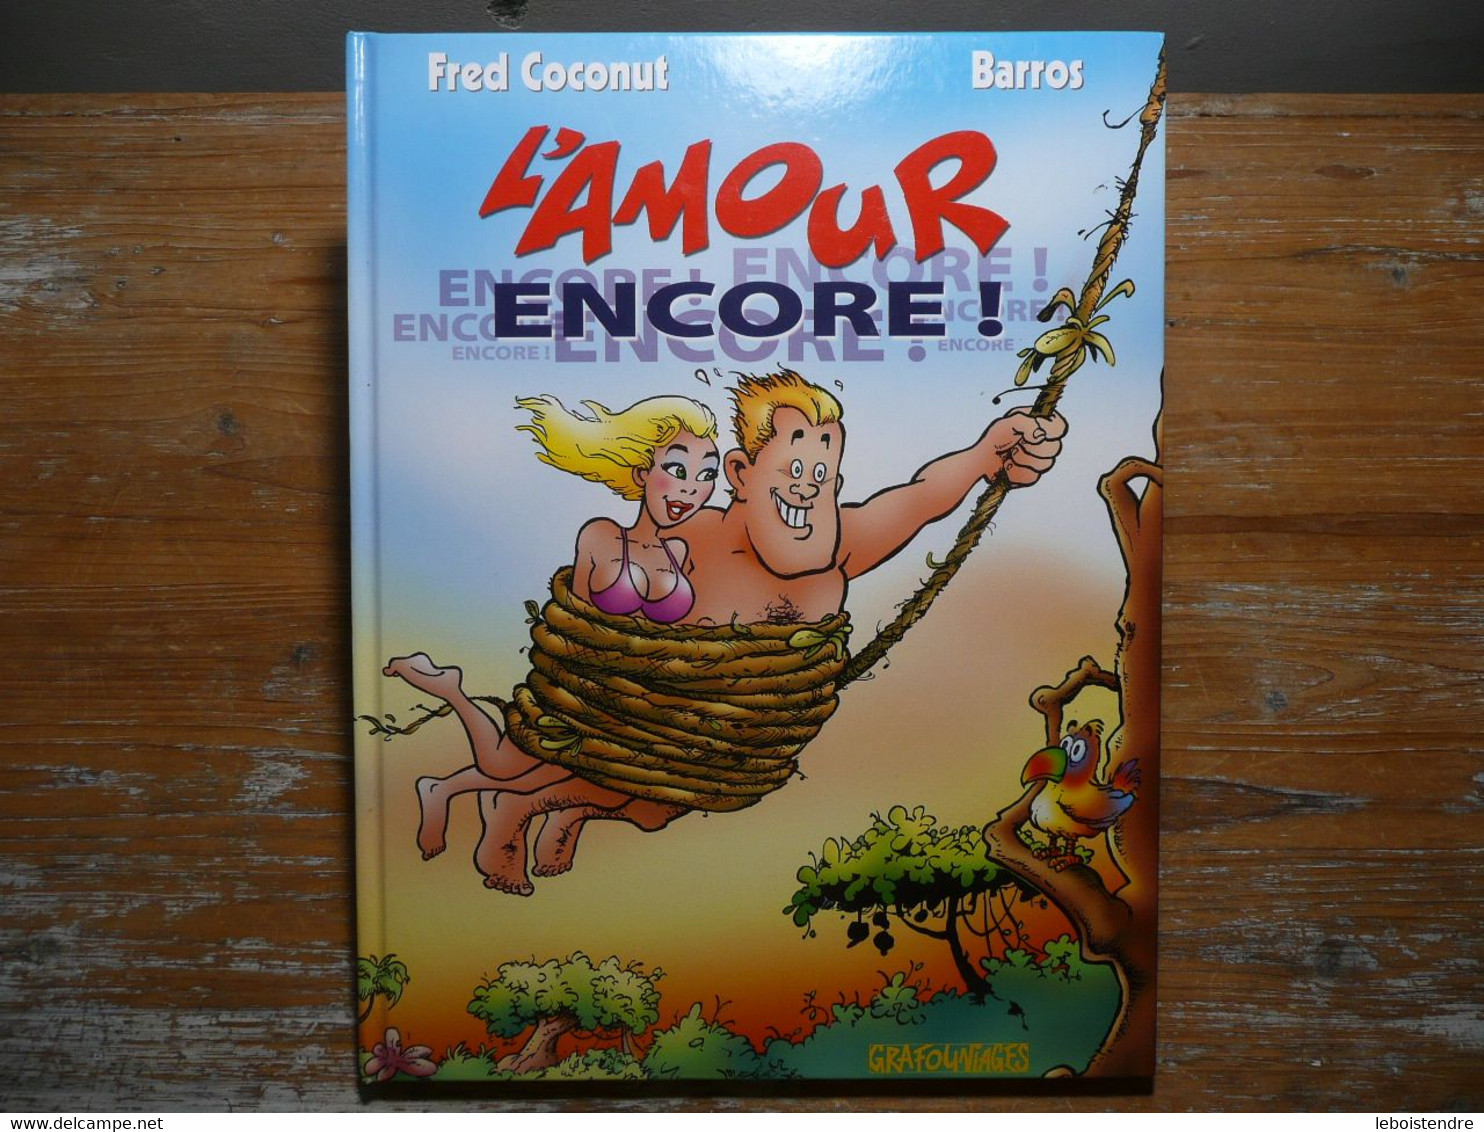 L AMOUR ENCORE FRED COCONUT BARROS DEDICACE NOMINATIVE COCONUT 2002 EDITION ORIGINALE GRAFOUNIAGES - Dedicados